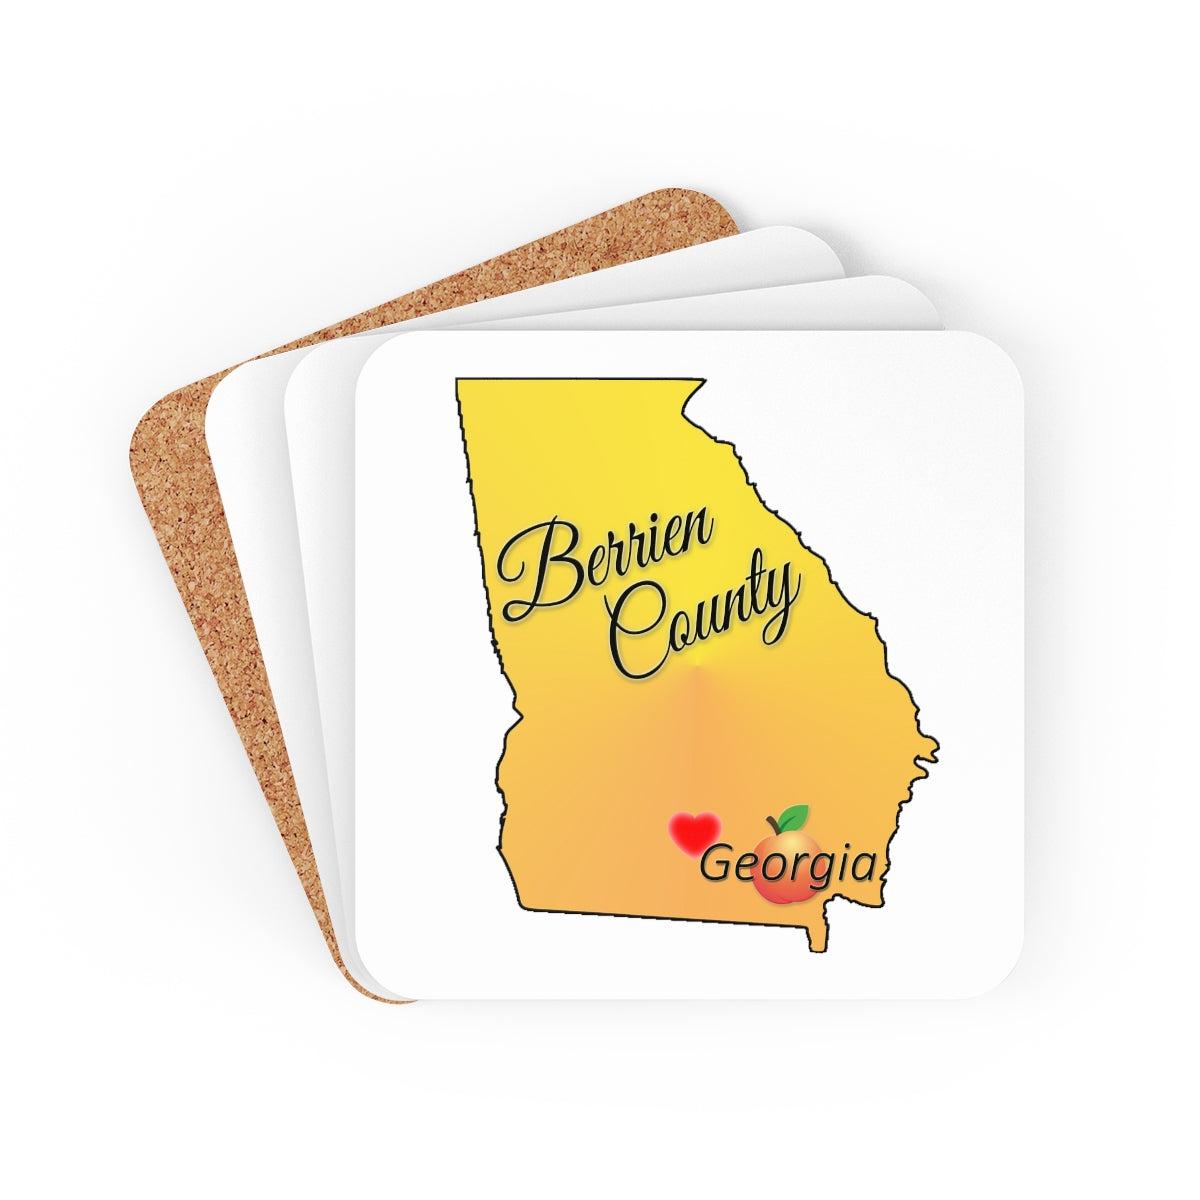 Berrien County Georgia Corkwood Coaster Set